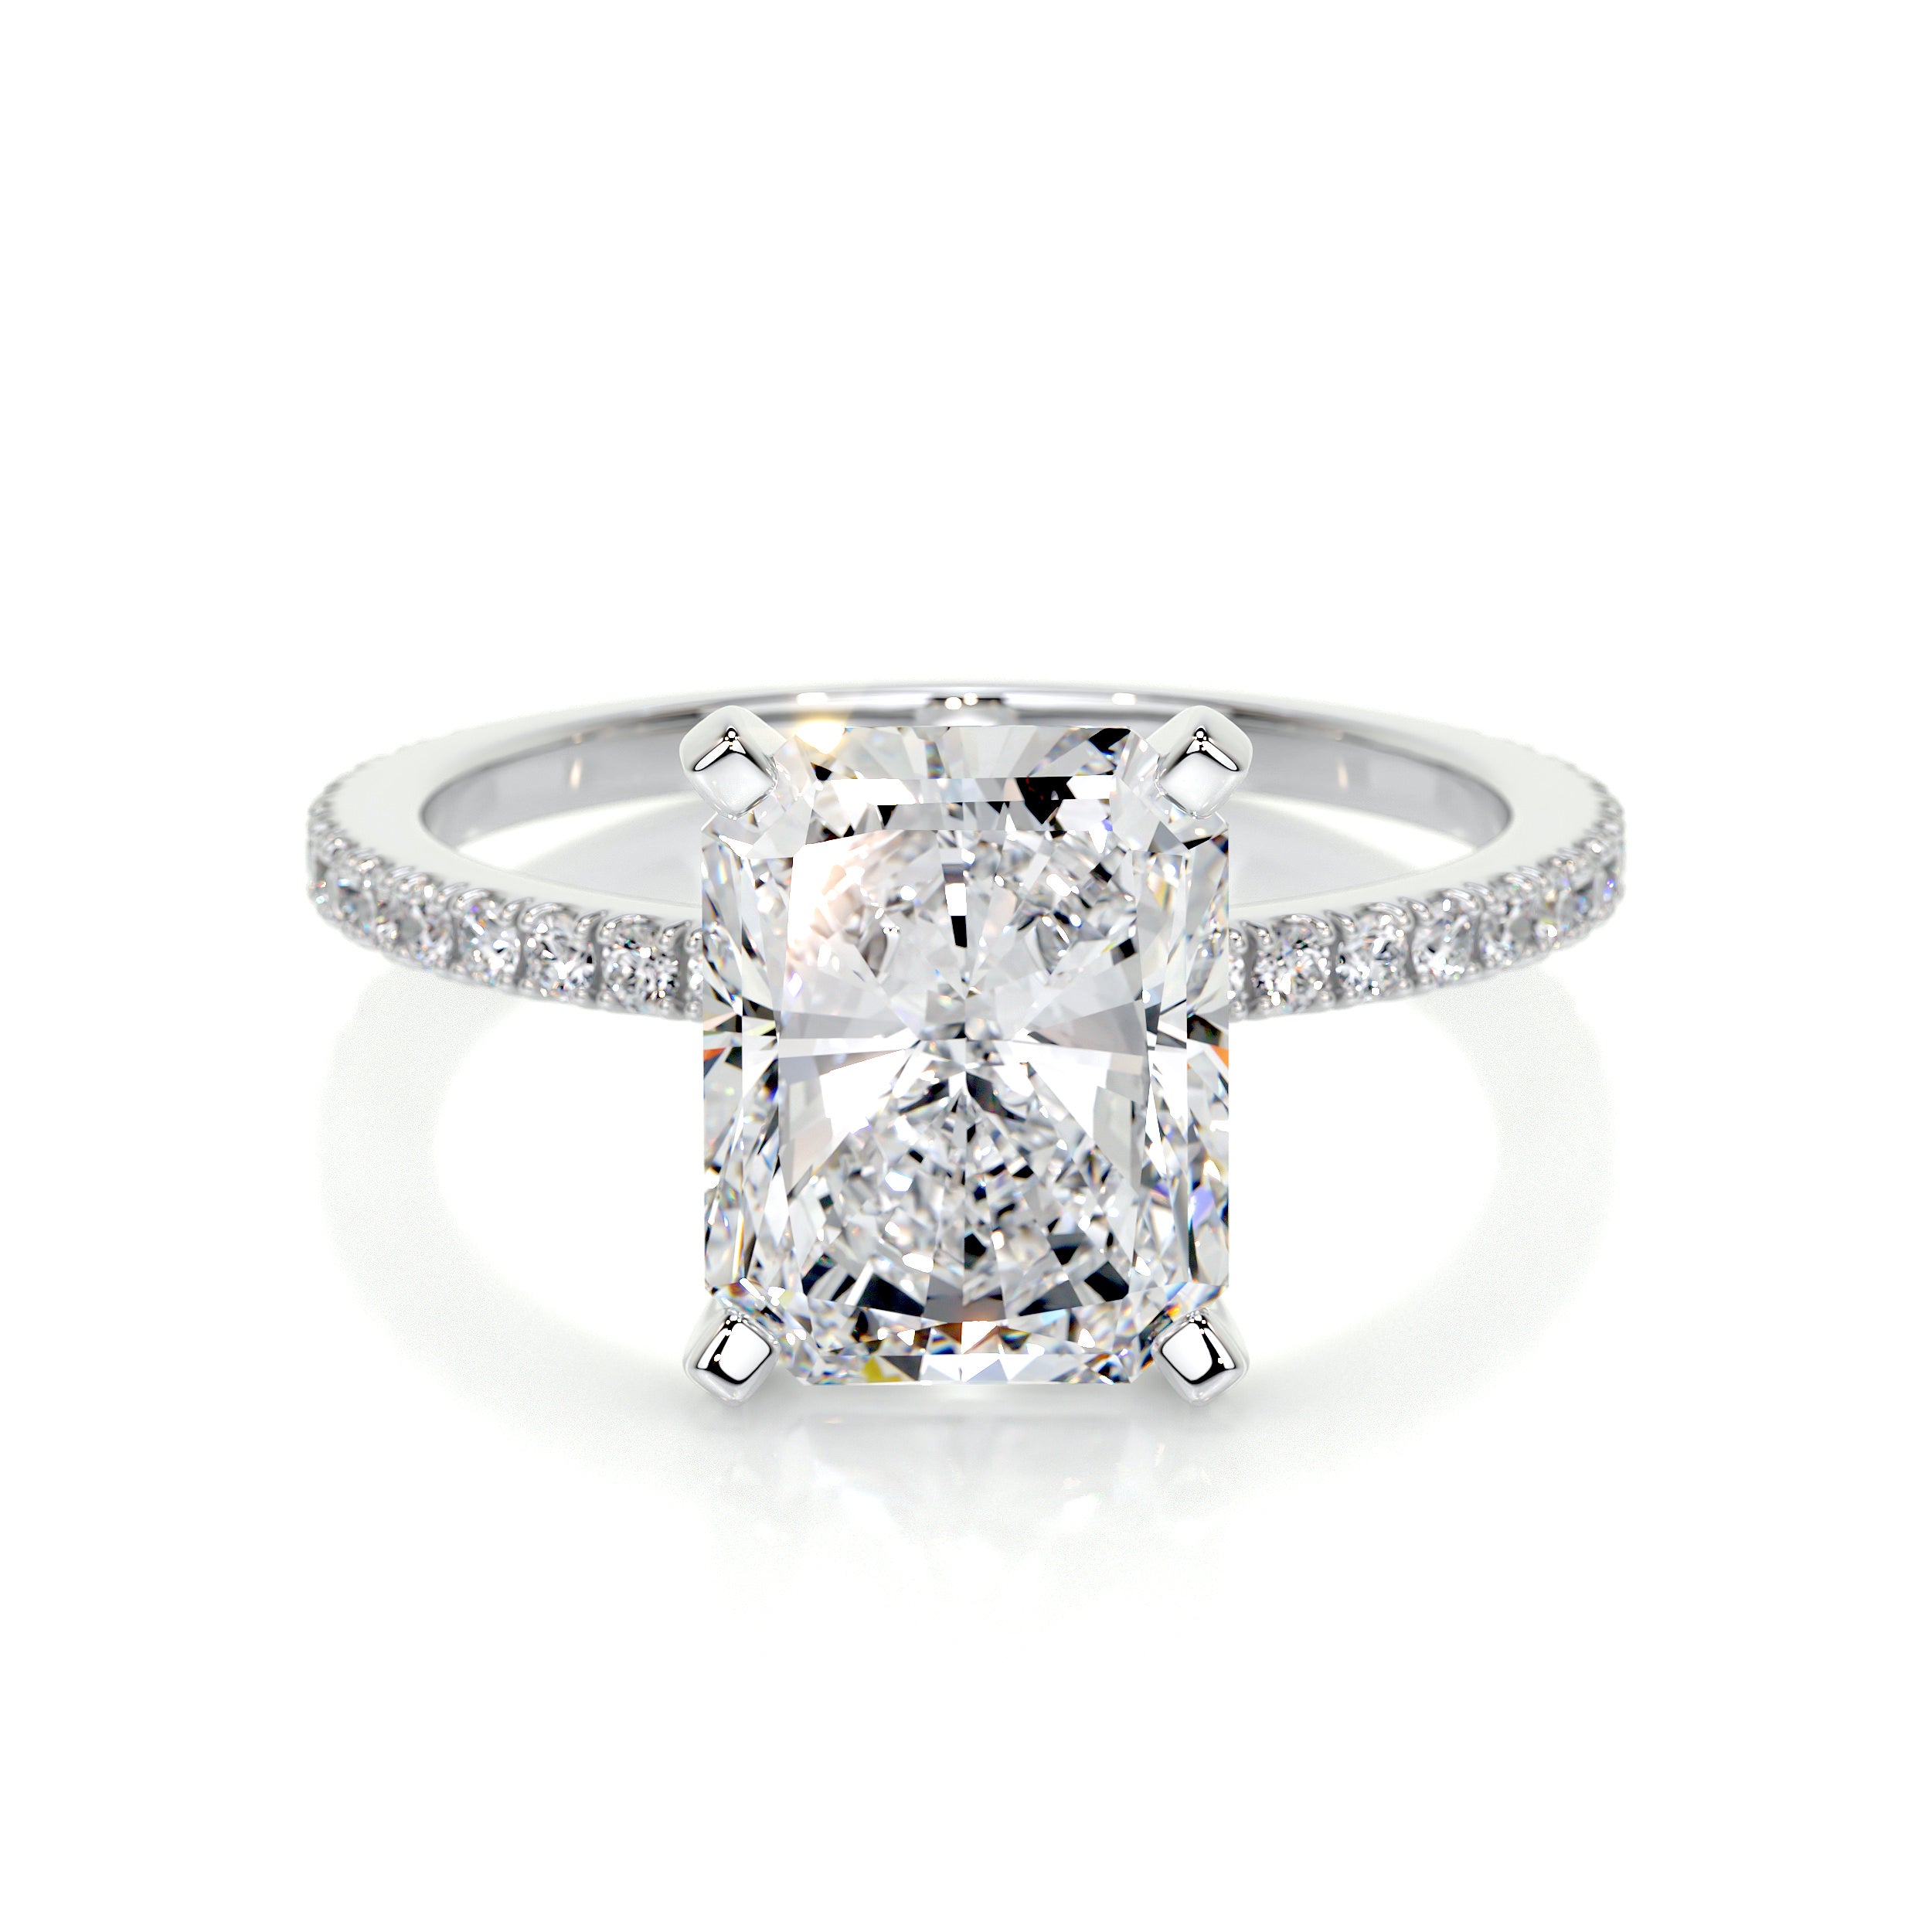 Audrey Lab Grown Diamond Ring   (3.30 Carat) -14K White Gold